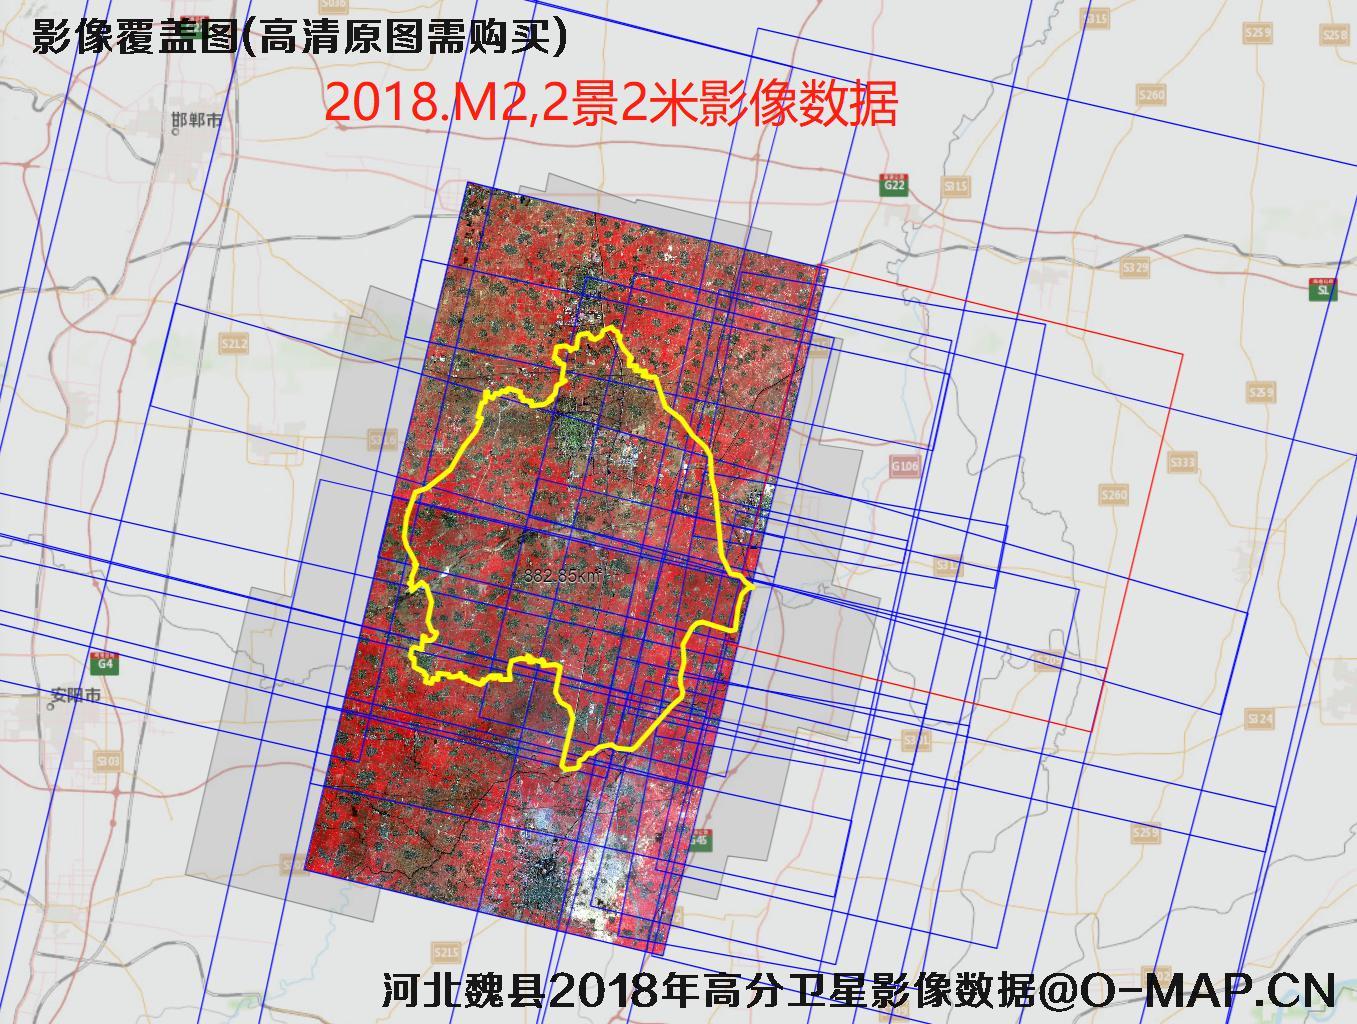 河北魏县玉米小麦长势评估2018年卫星影像数据